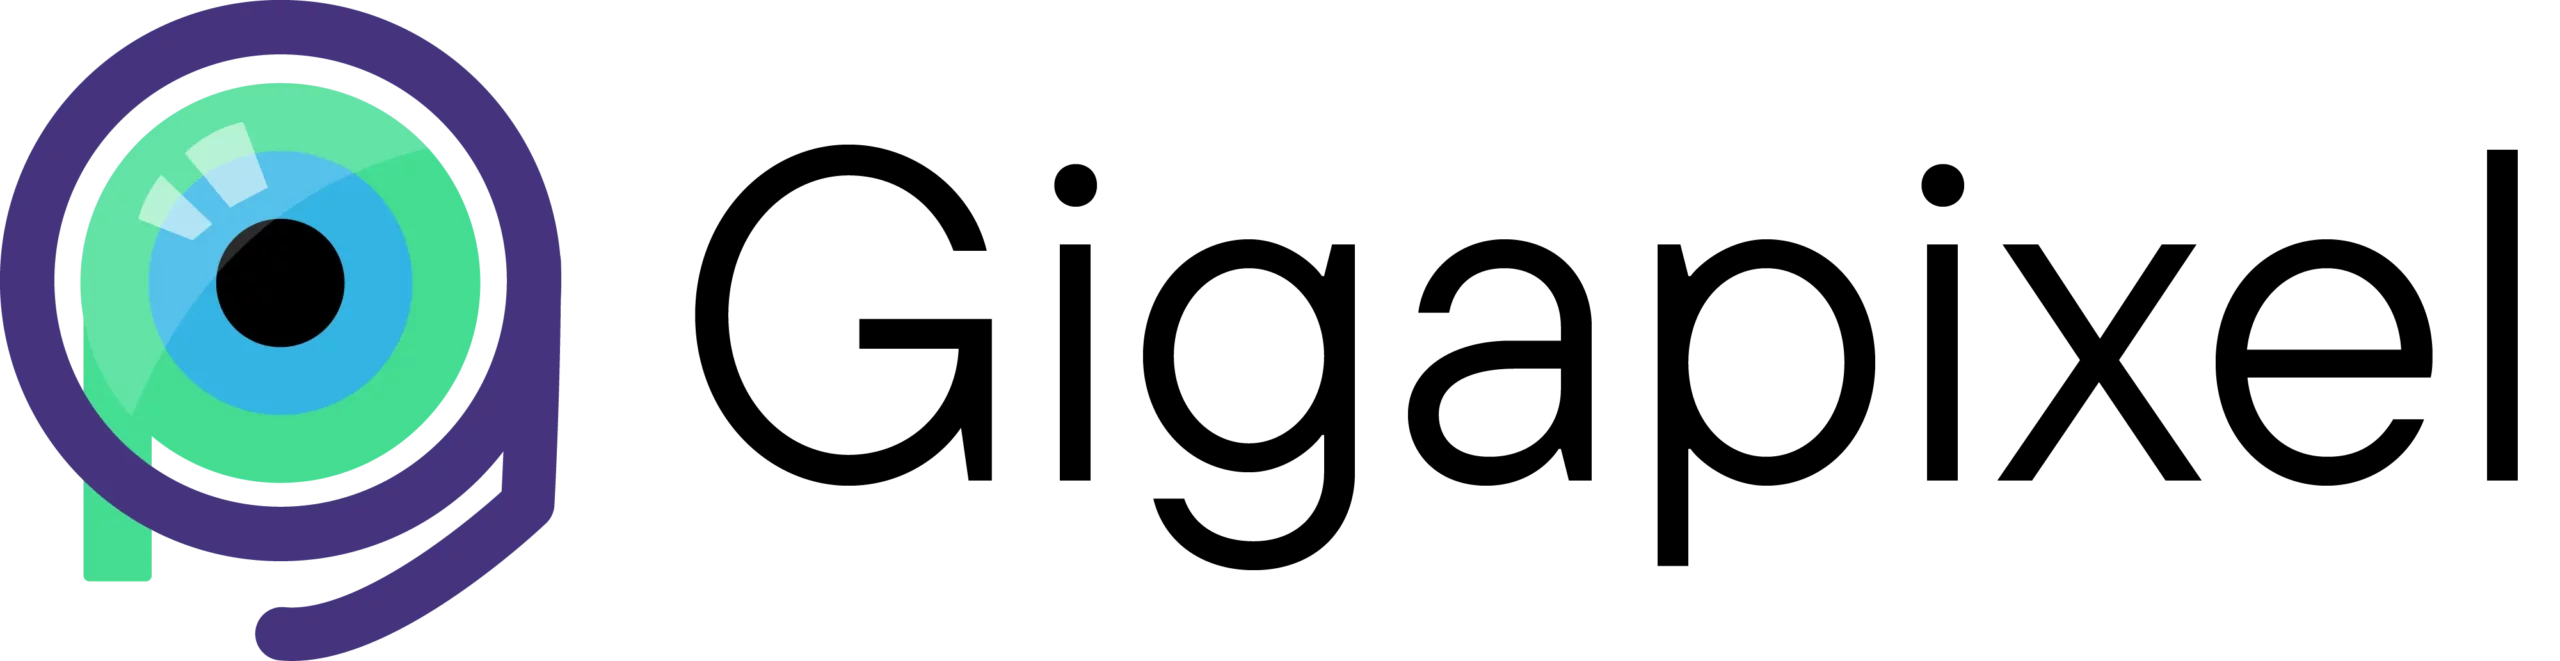 gigapixel_logo